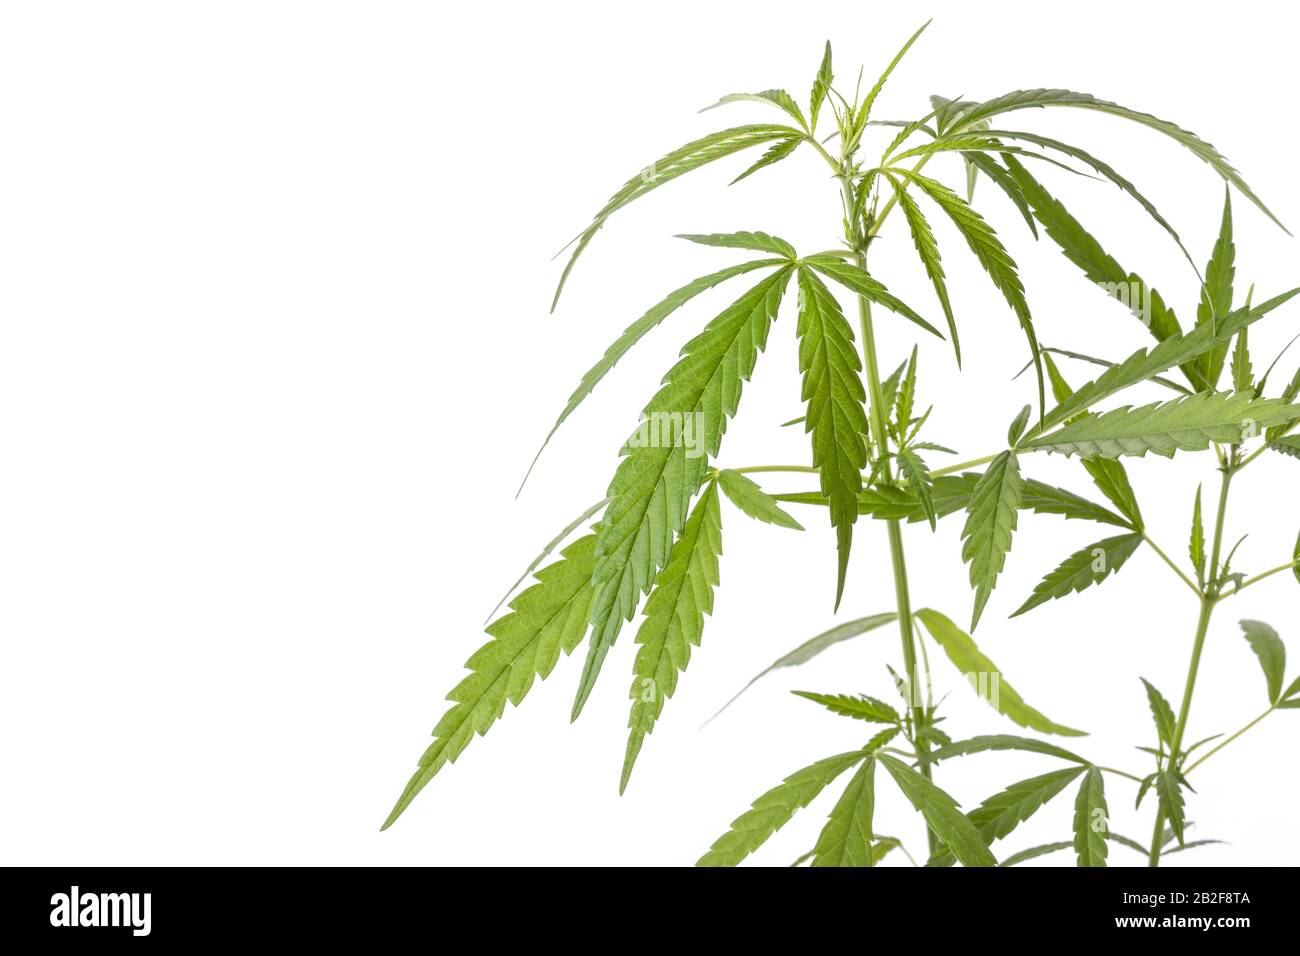 Gros plan jeune vert frais de marijuana arbre dans le pot d'ensemencement en plastique noir isolé sur fond blanc Banque D'Images